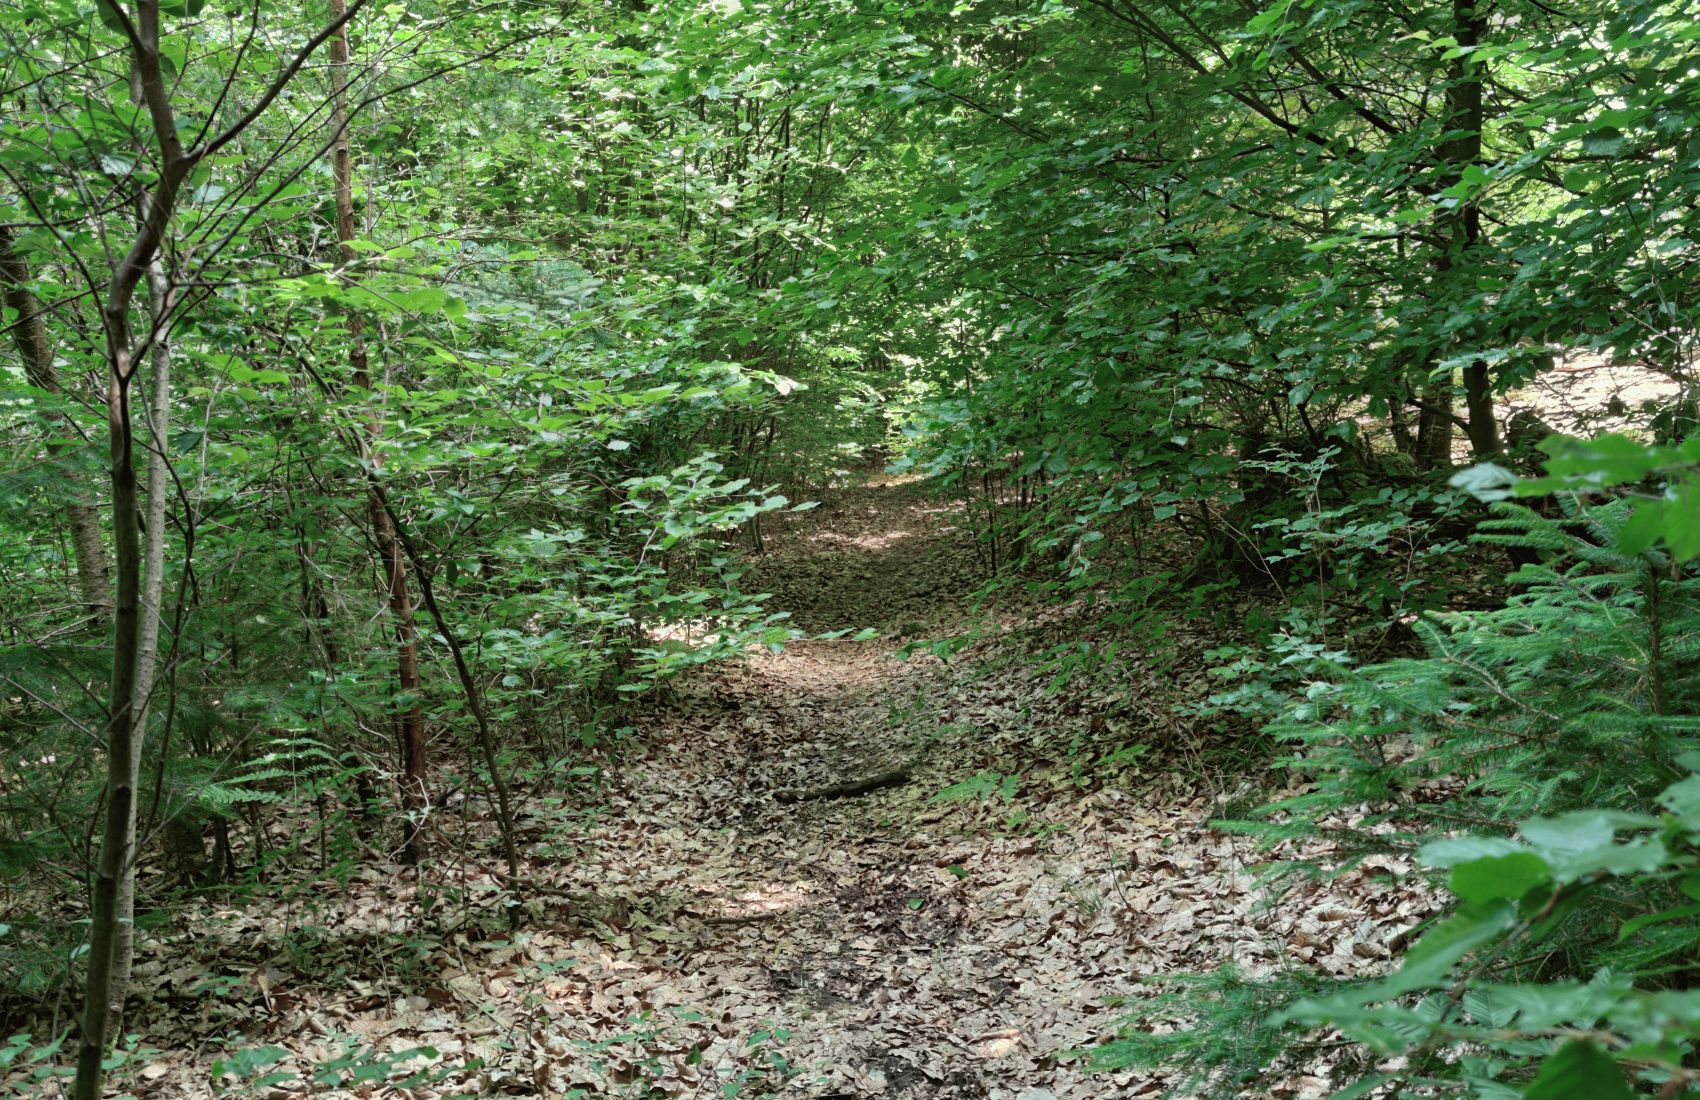 3/8 Les sentiers étroits dans la forêt n'étaient parfois reconnaissables qu'aux feuilles mortes.